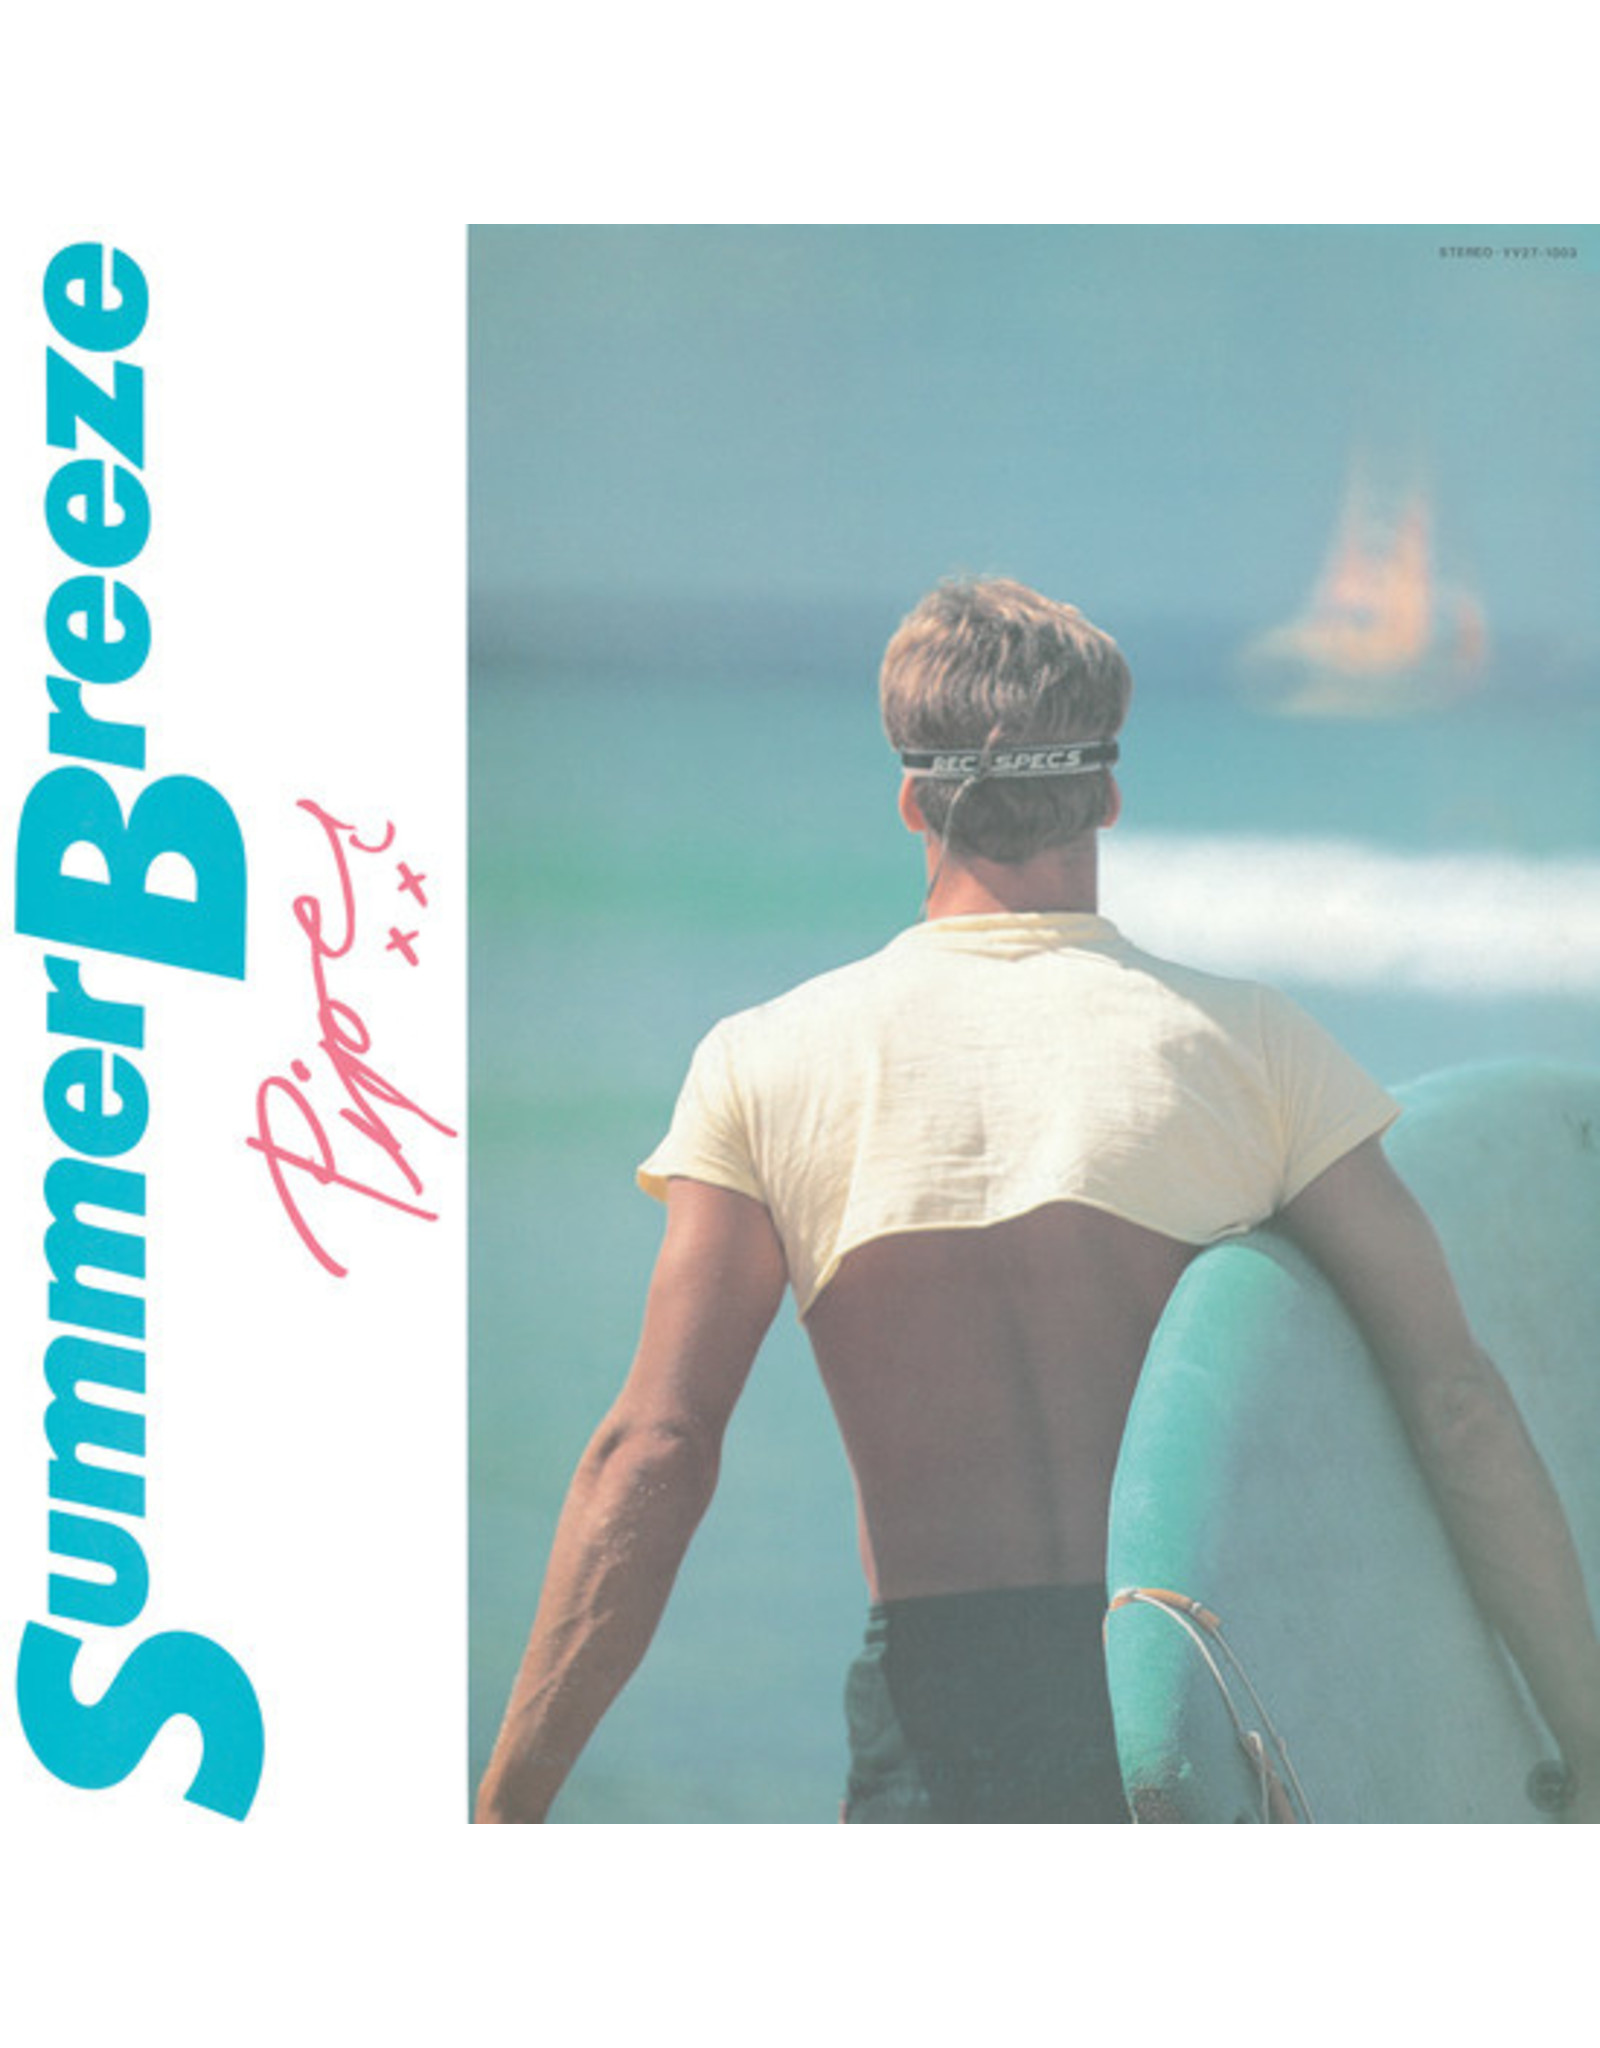 Ship to Shore Piper: Summer Breeze LP